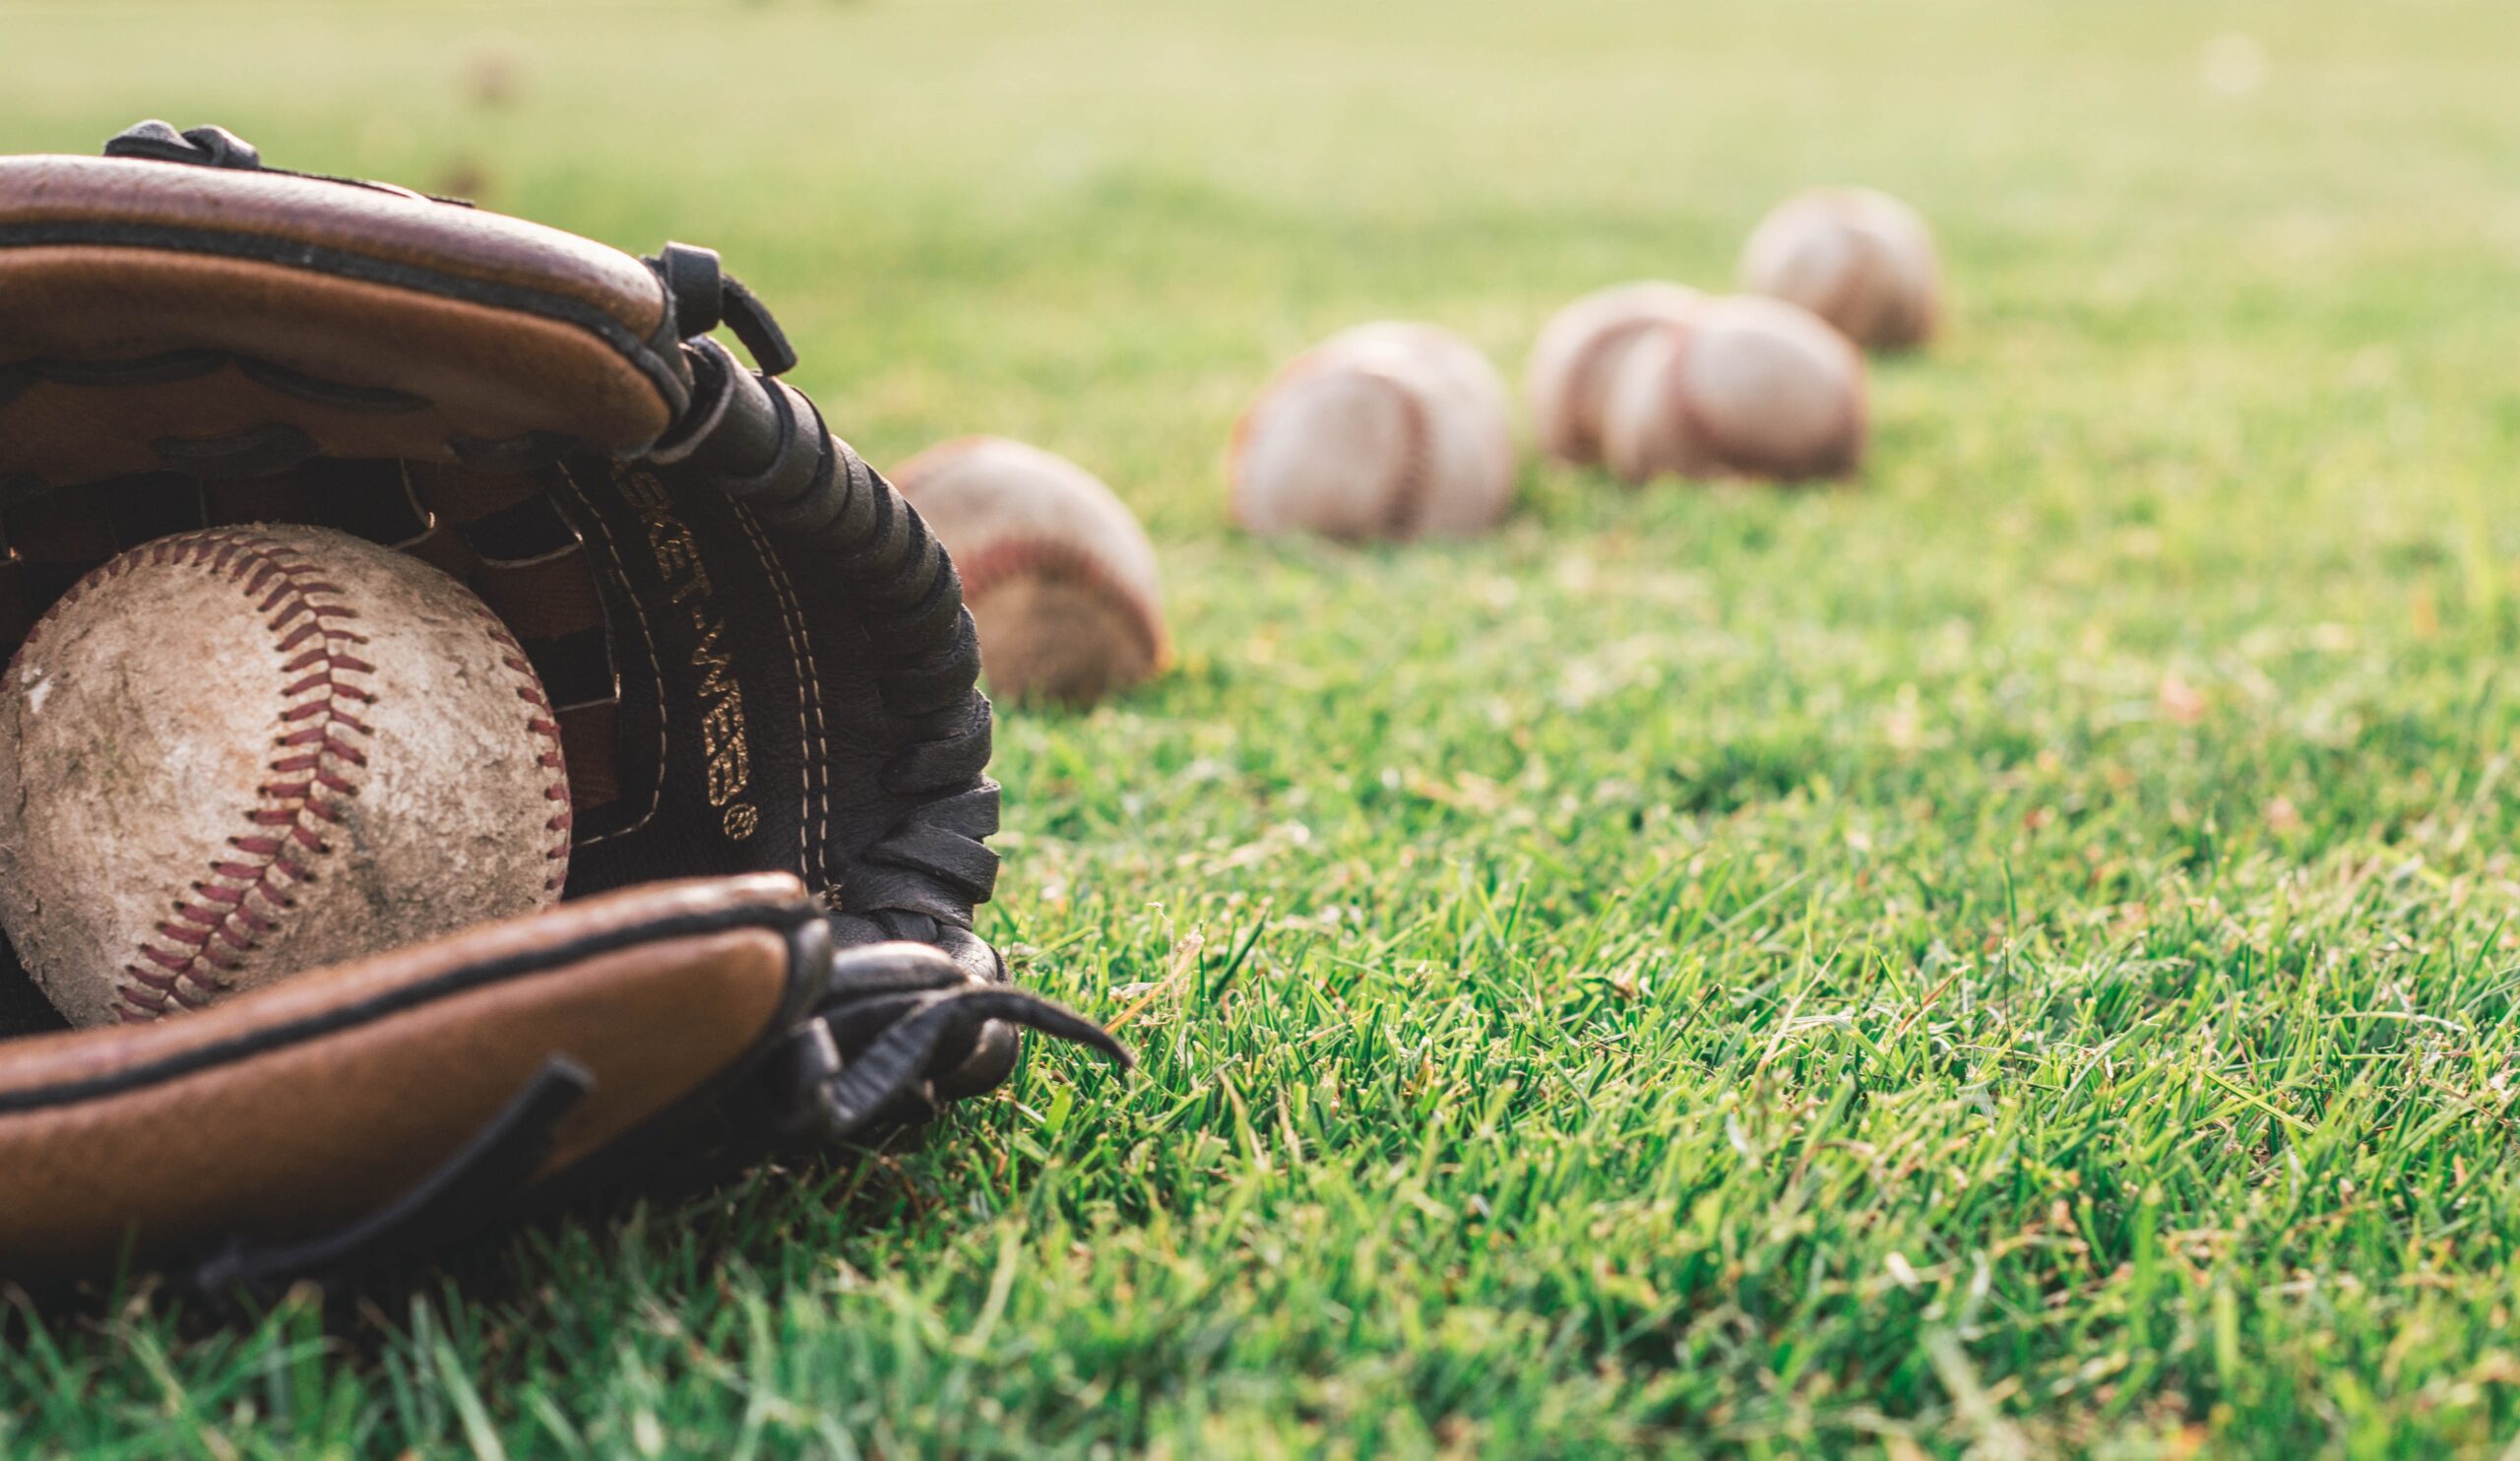 white-baseball-ball-on-brown-leather-baseball-mitt